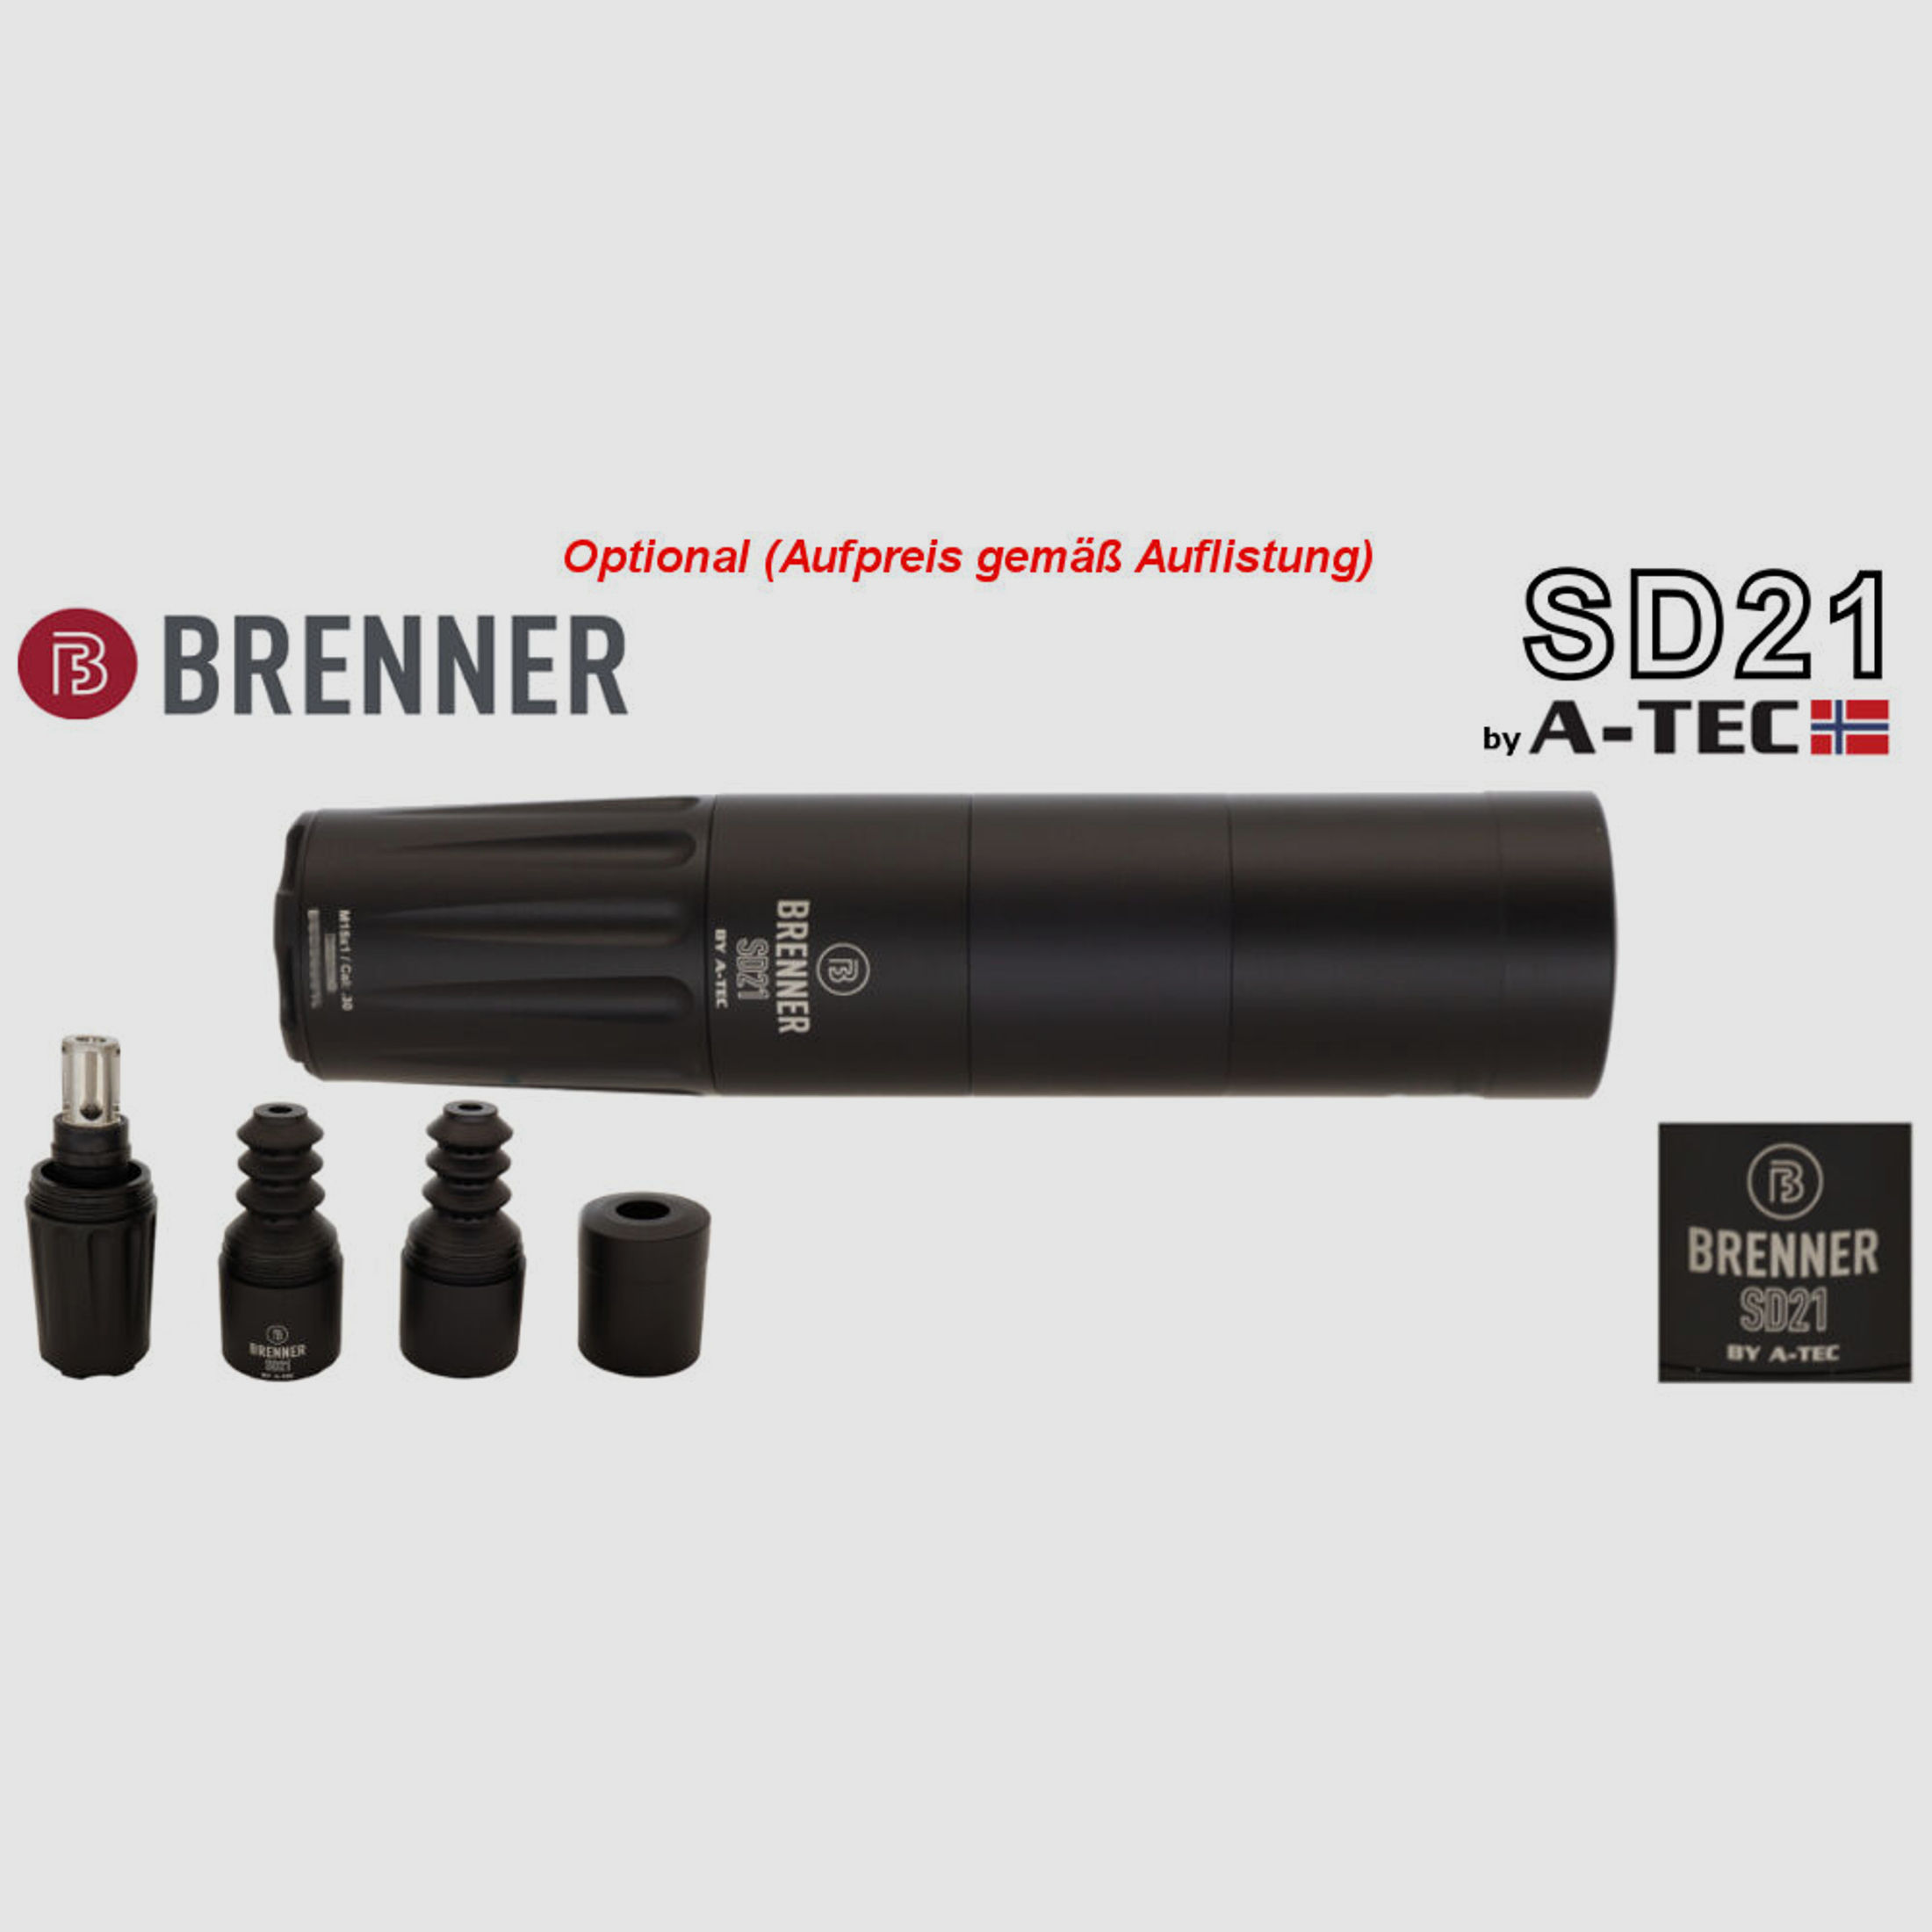 Bergara	 B14 B&H Prohunter Flex LINKS Lochschaft inkl. Zeiss V6 2,5-15x56 fertig montiert / Optional: Brenner Schalldämpfer